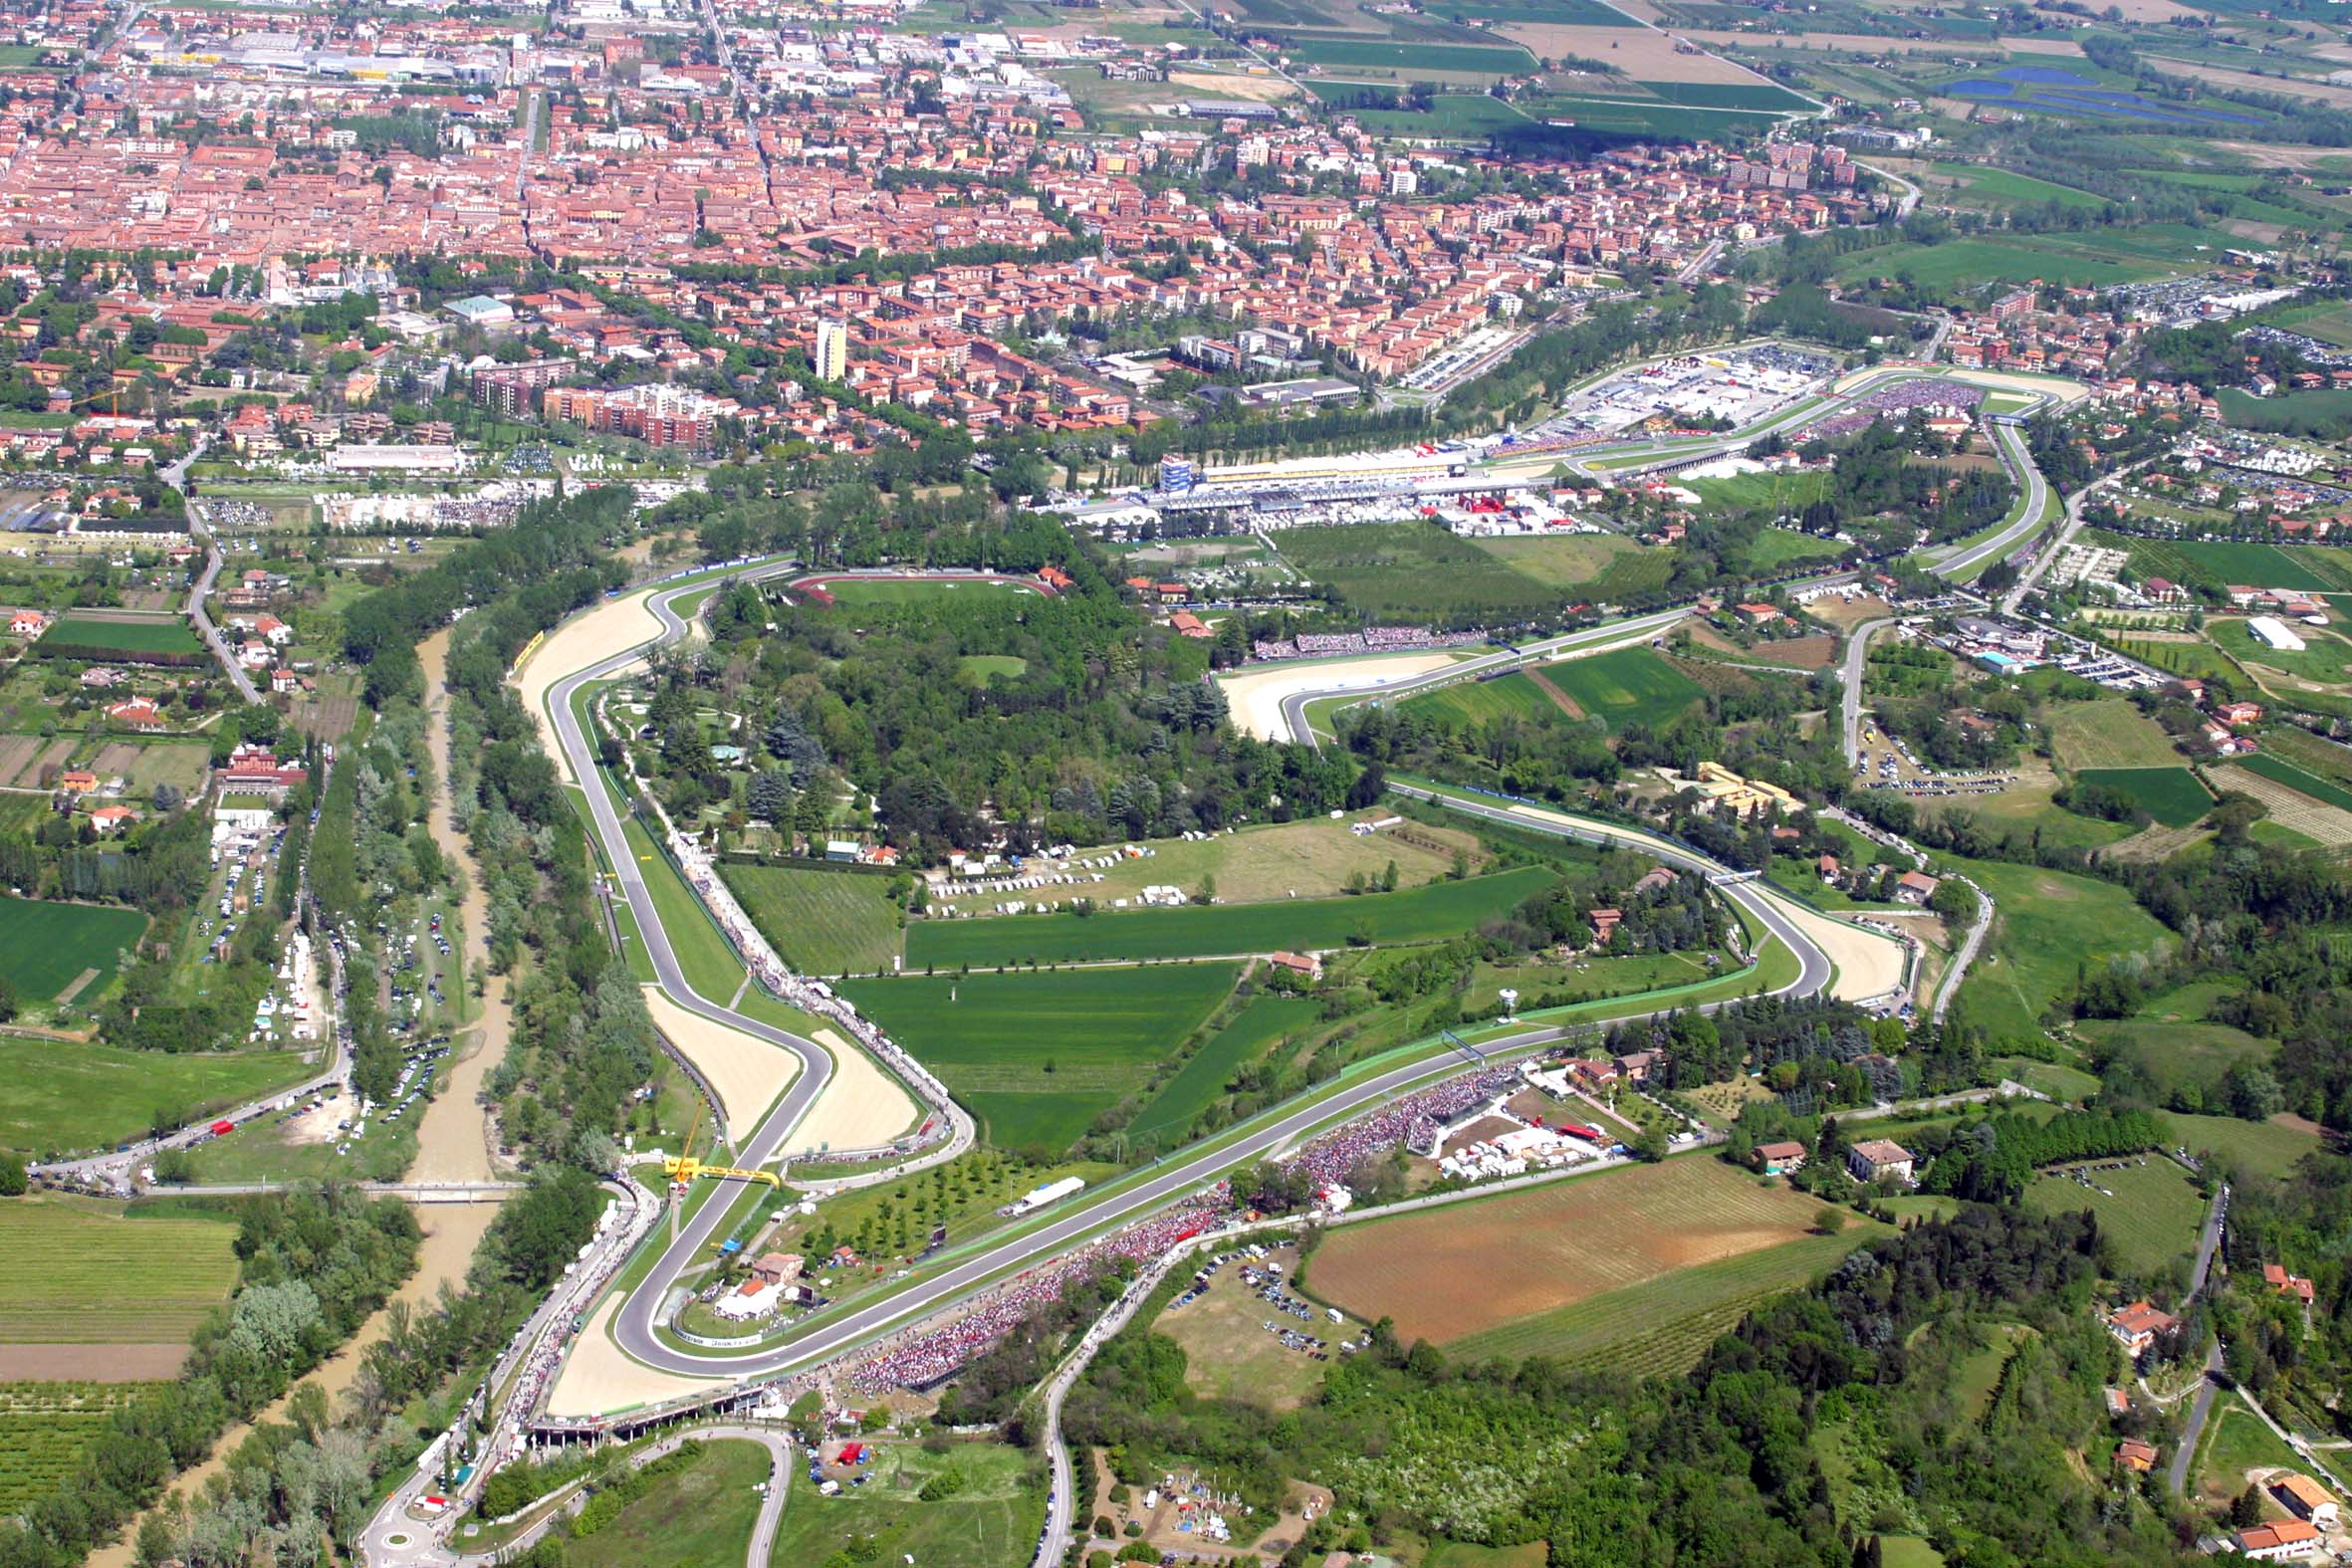 L'autodromo di Imola, visto dall'alto (foto da: commons.wikimedia.org)